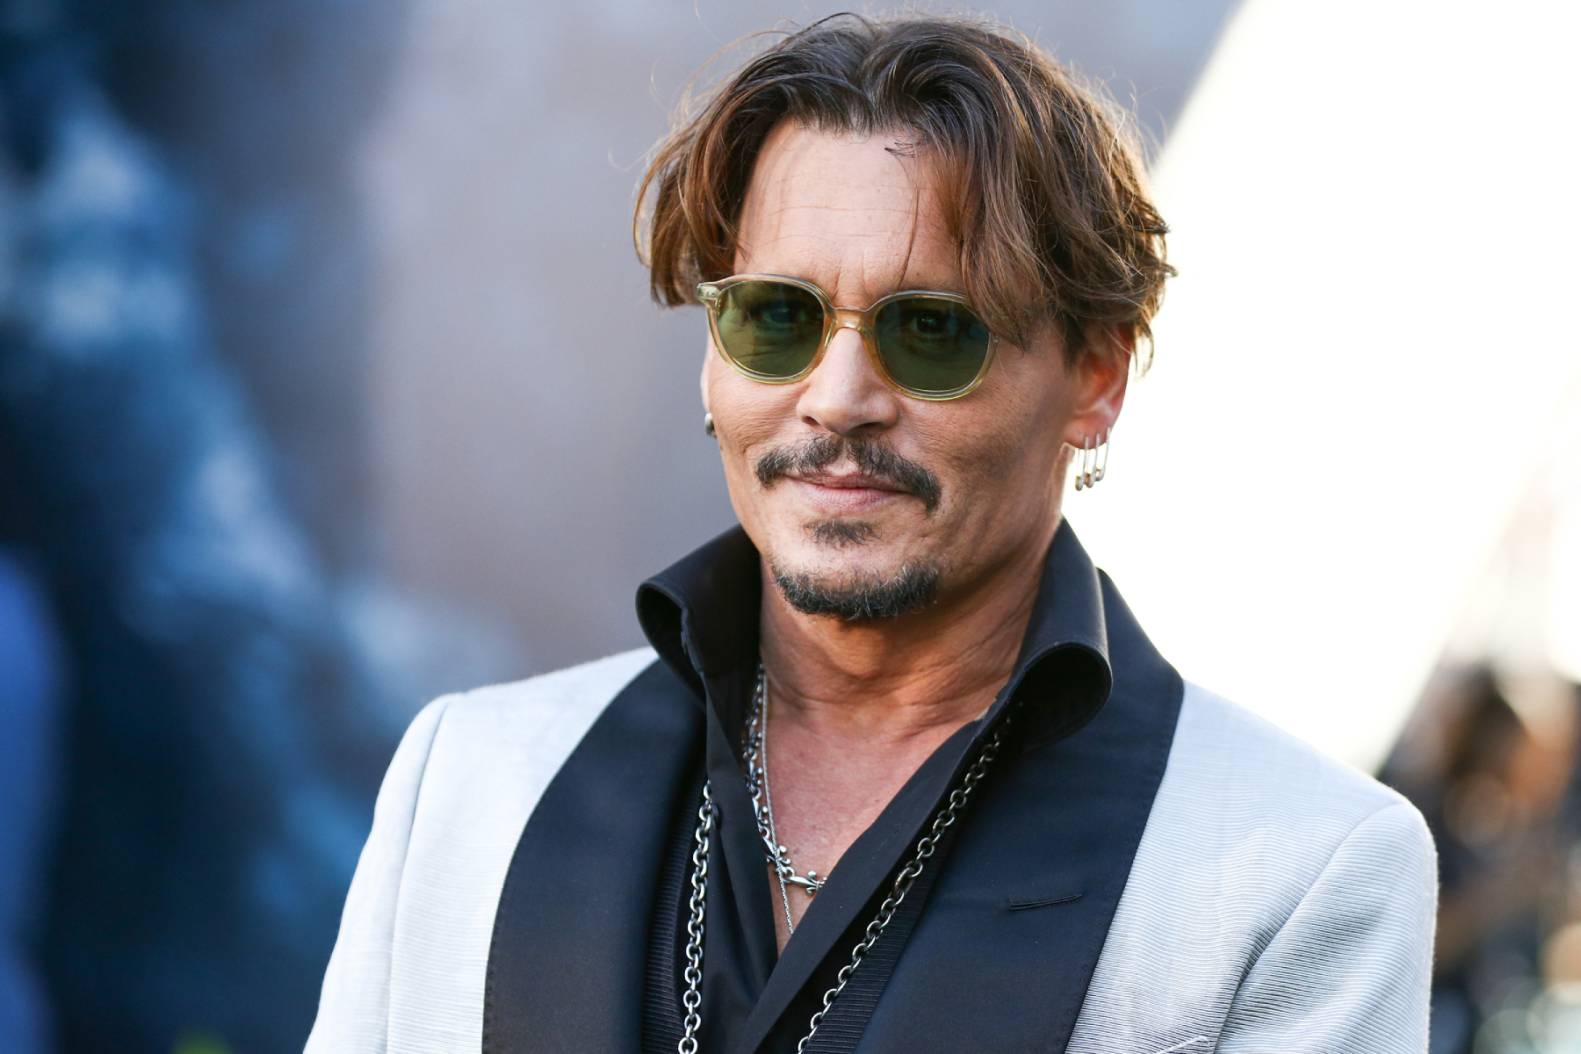 Soltero otra vez y sigue el juicio contra Amber: Así está la vida de Johnny Depp